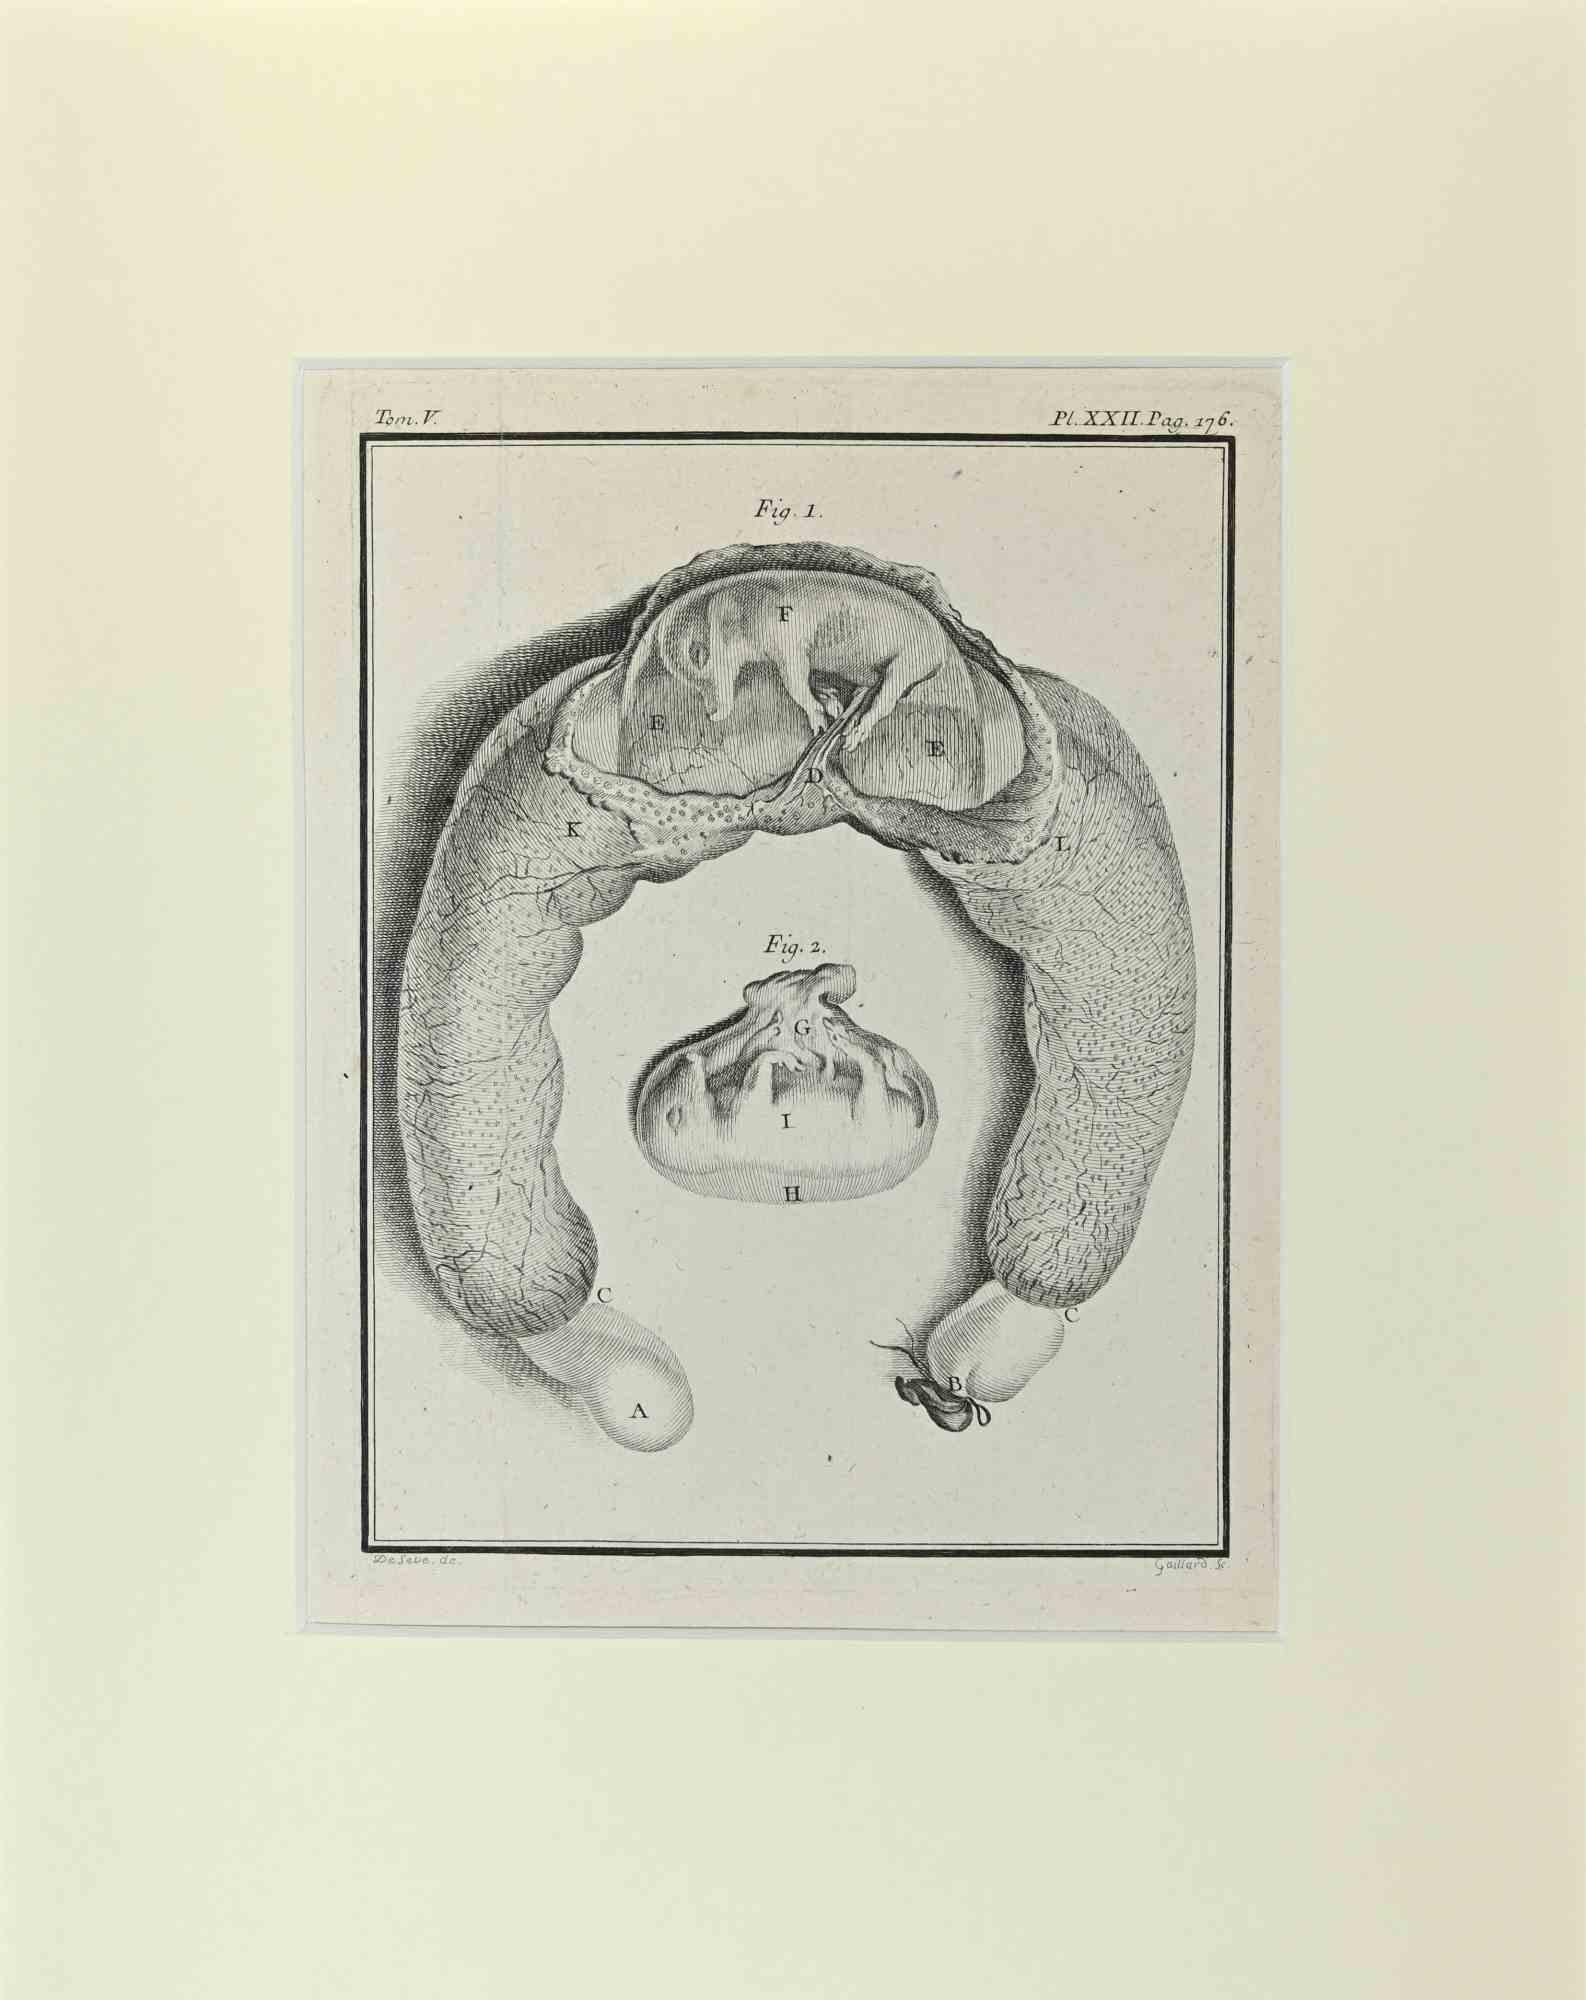 Jacques de Seve Animal Print - Fetus - Wild boar - Pig - Etching by Jacques De sève - 1771